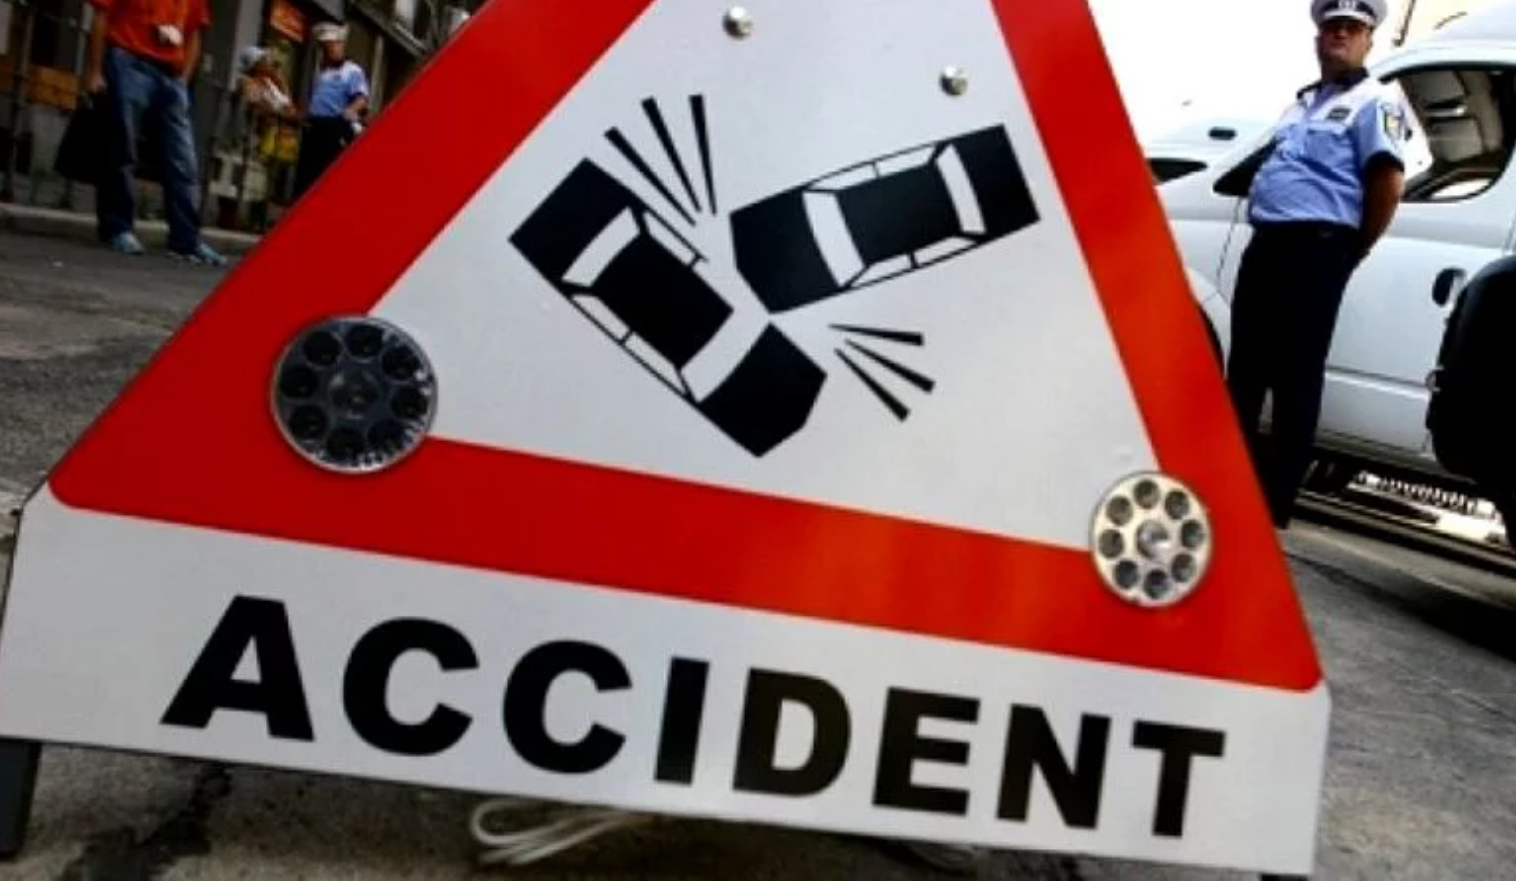 Accidentu în Vrancea: doi bicicliști, soț și soție, morți după ce o mașină a vrut să-i depășească